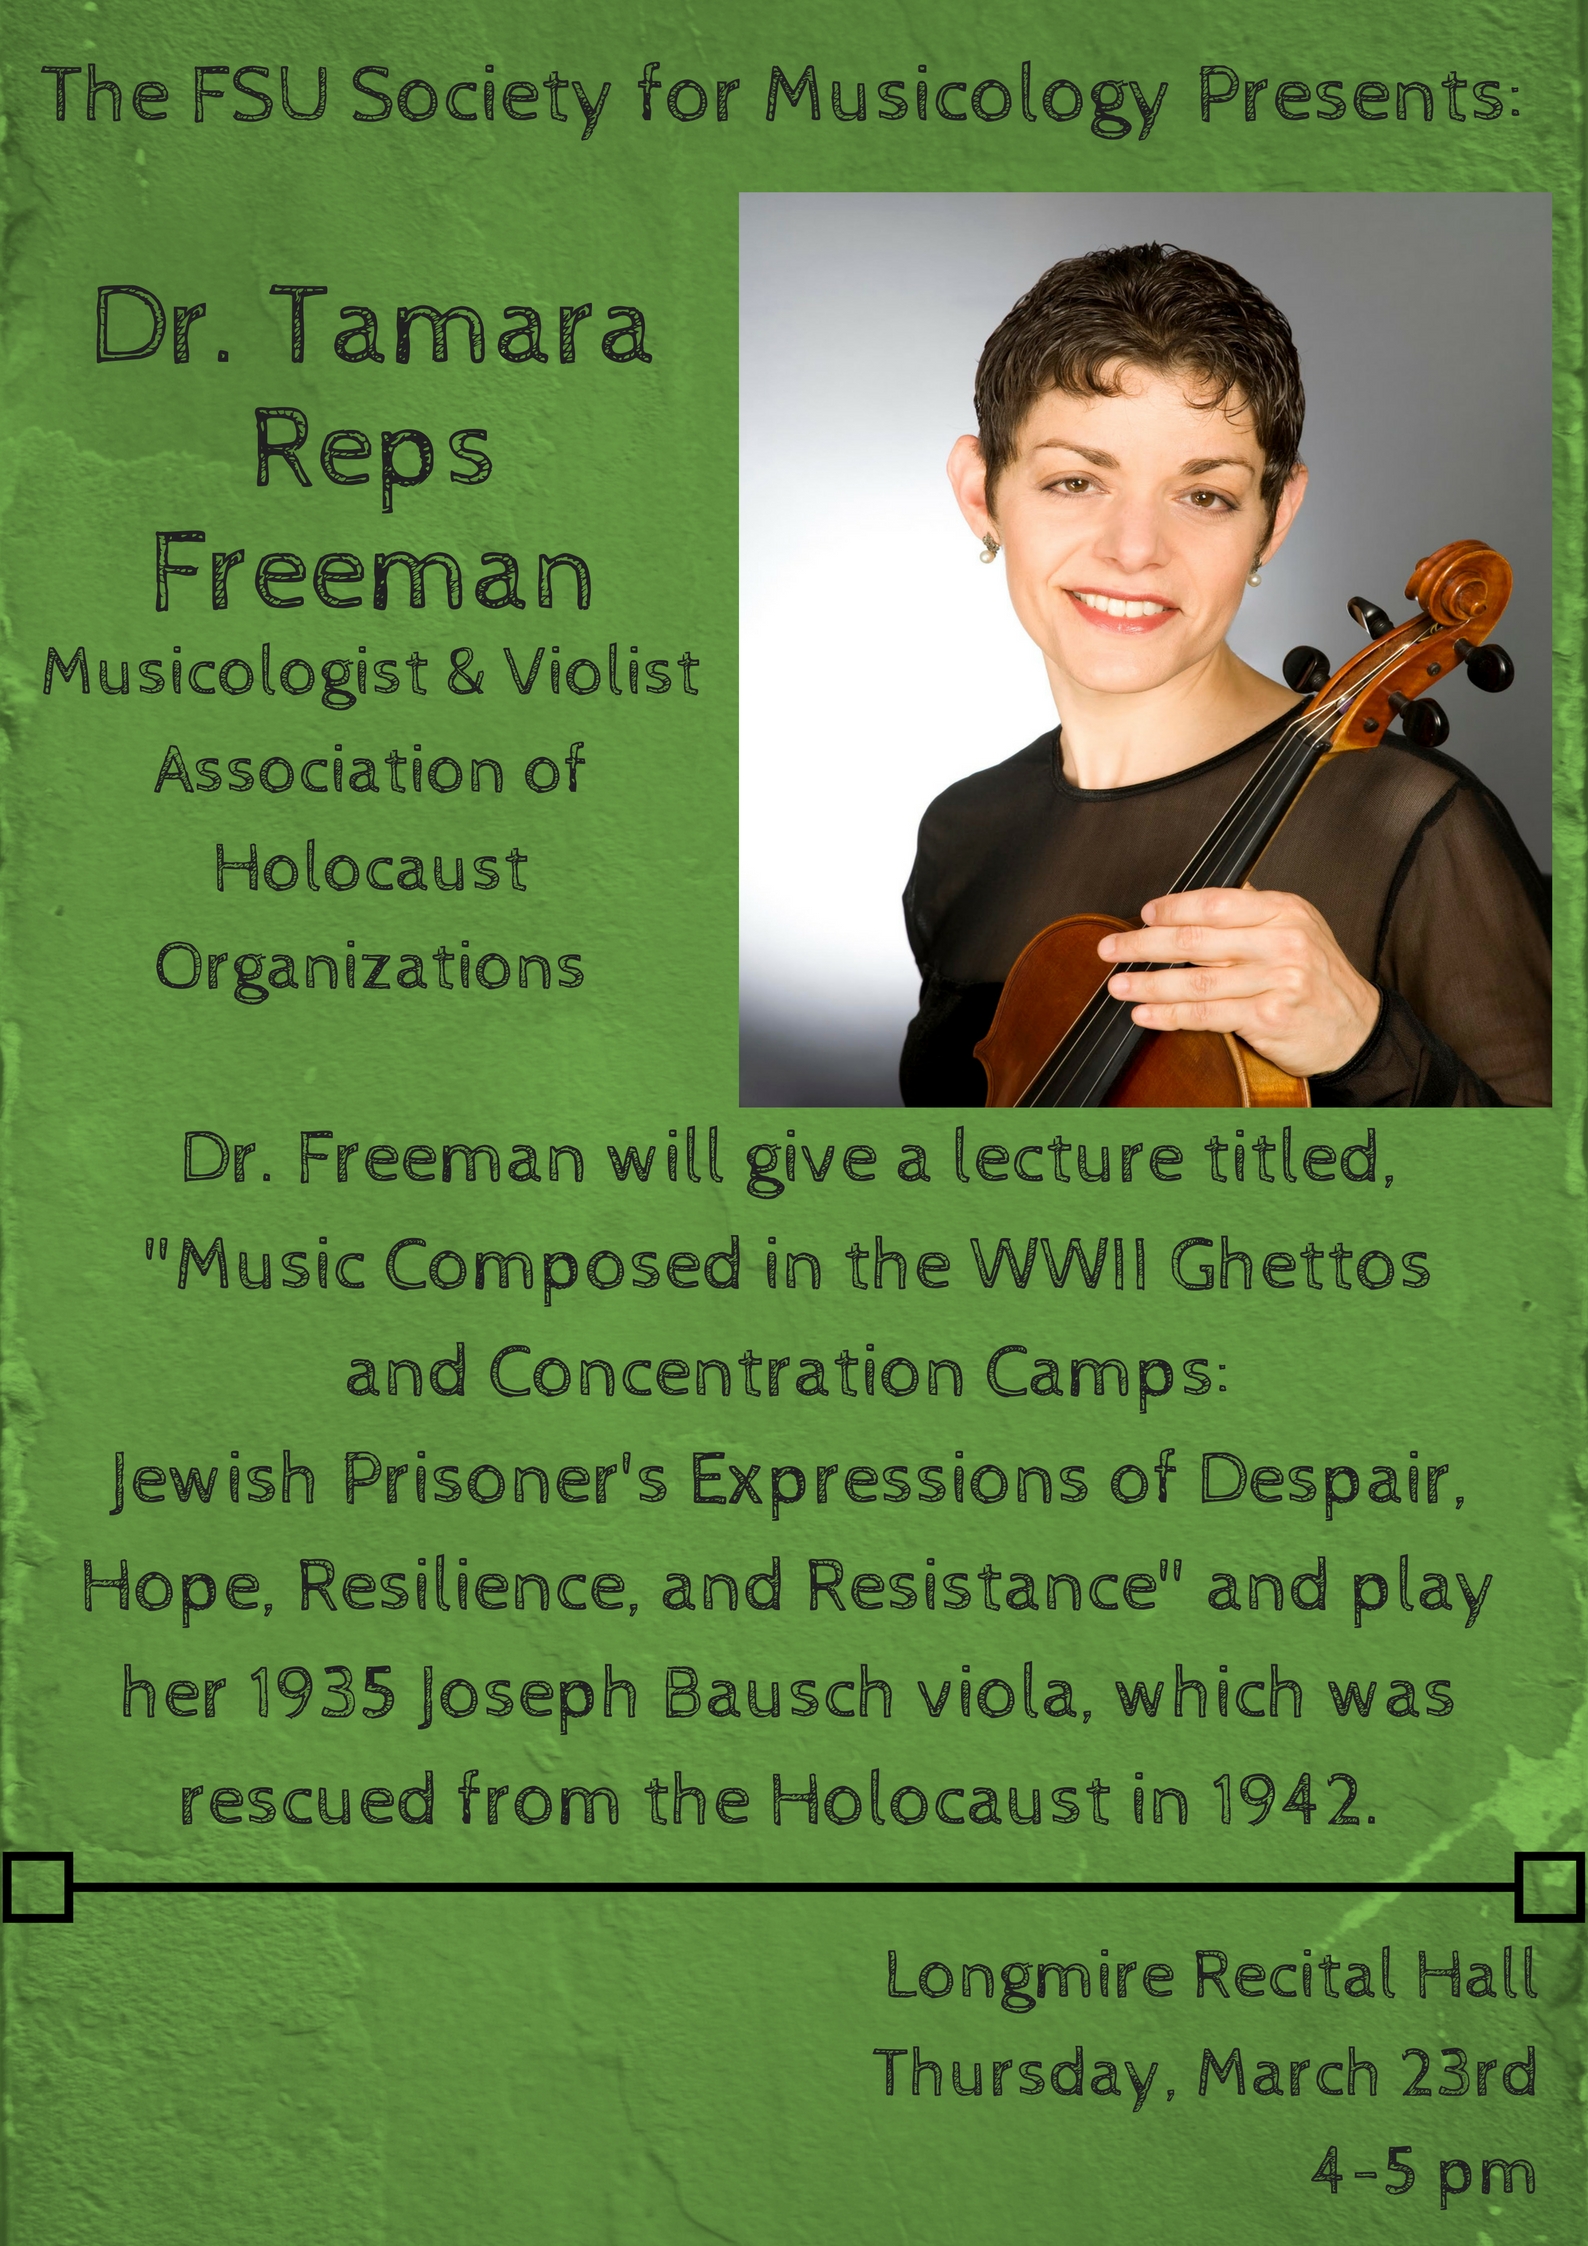 Dr. Tamara R. FreemanMusicologist, Association of Holocaust OrganizationsHolocaust Music Educator &amp; Recitalist